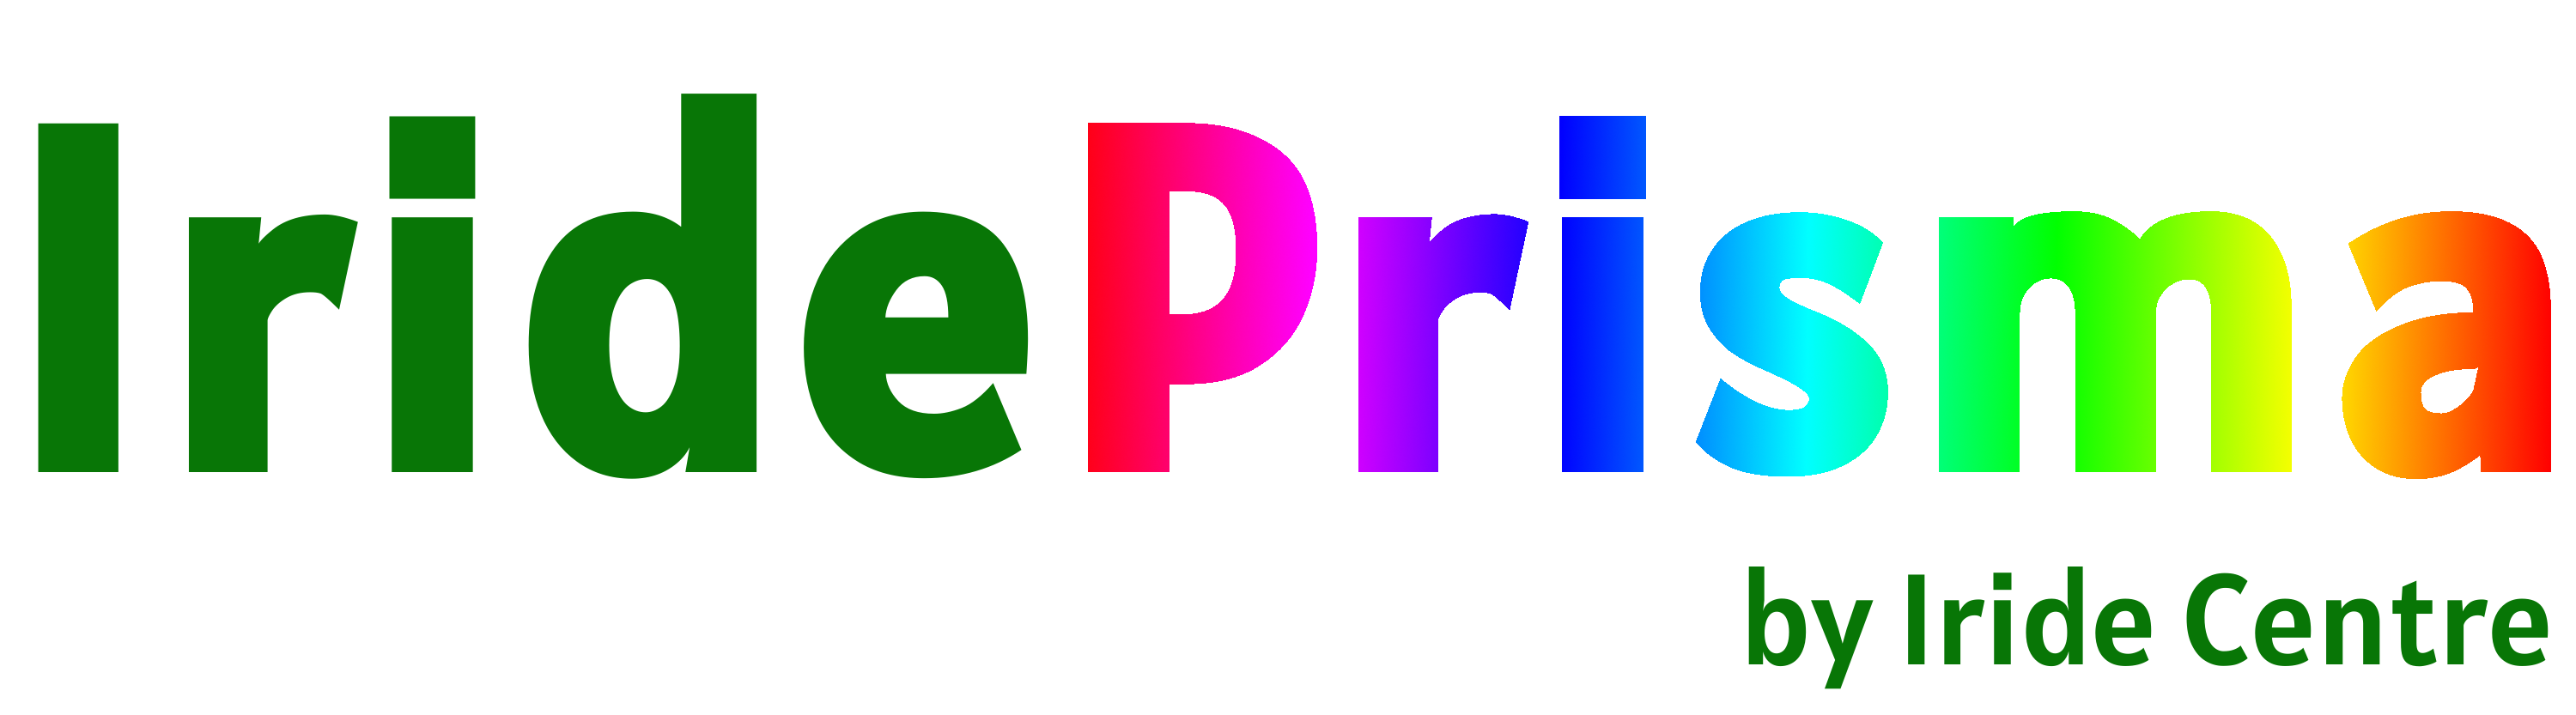 Logotip Prisma brez ozadja